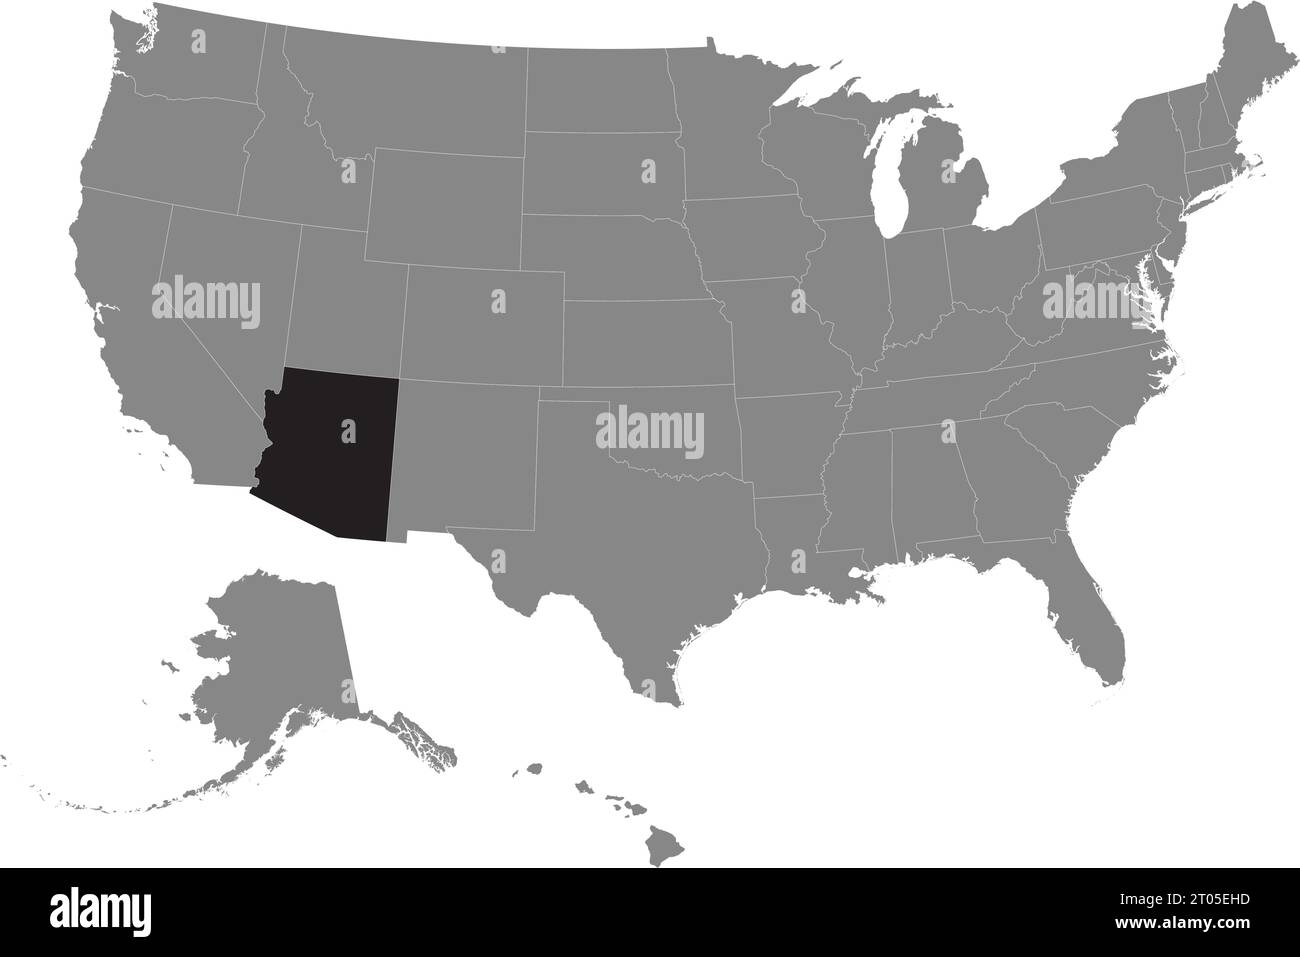 Schwarze CMYK-Bundeskarte von ARIZONA in detaillierter grauer, leerer politischer Karte der Vereinigten Staaten von Amerika auf transparentem Hintergrund Stock Vektor